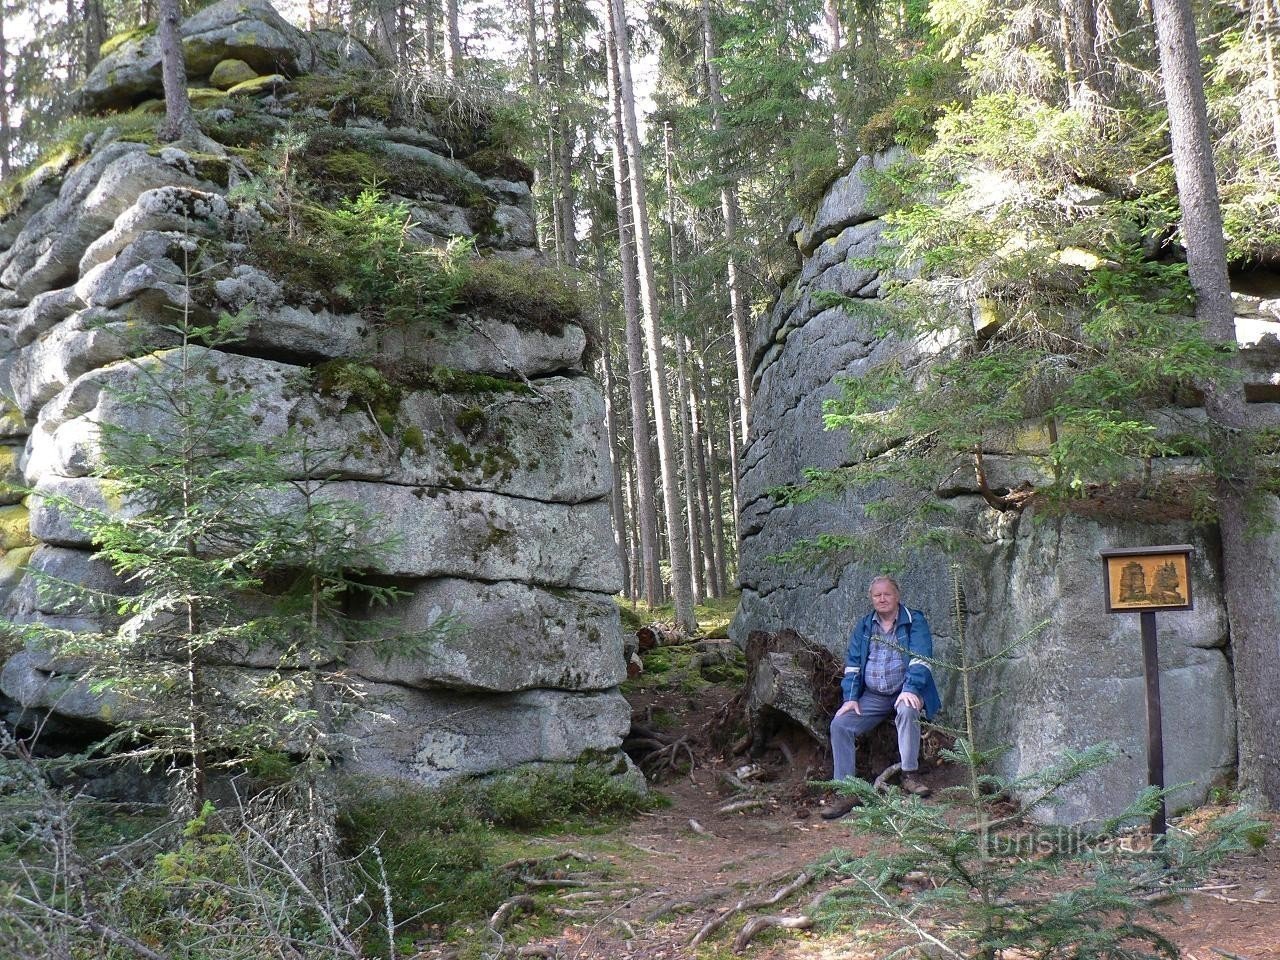 Bear trail, rock gate